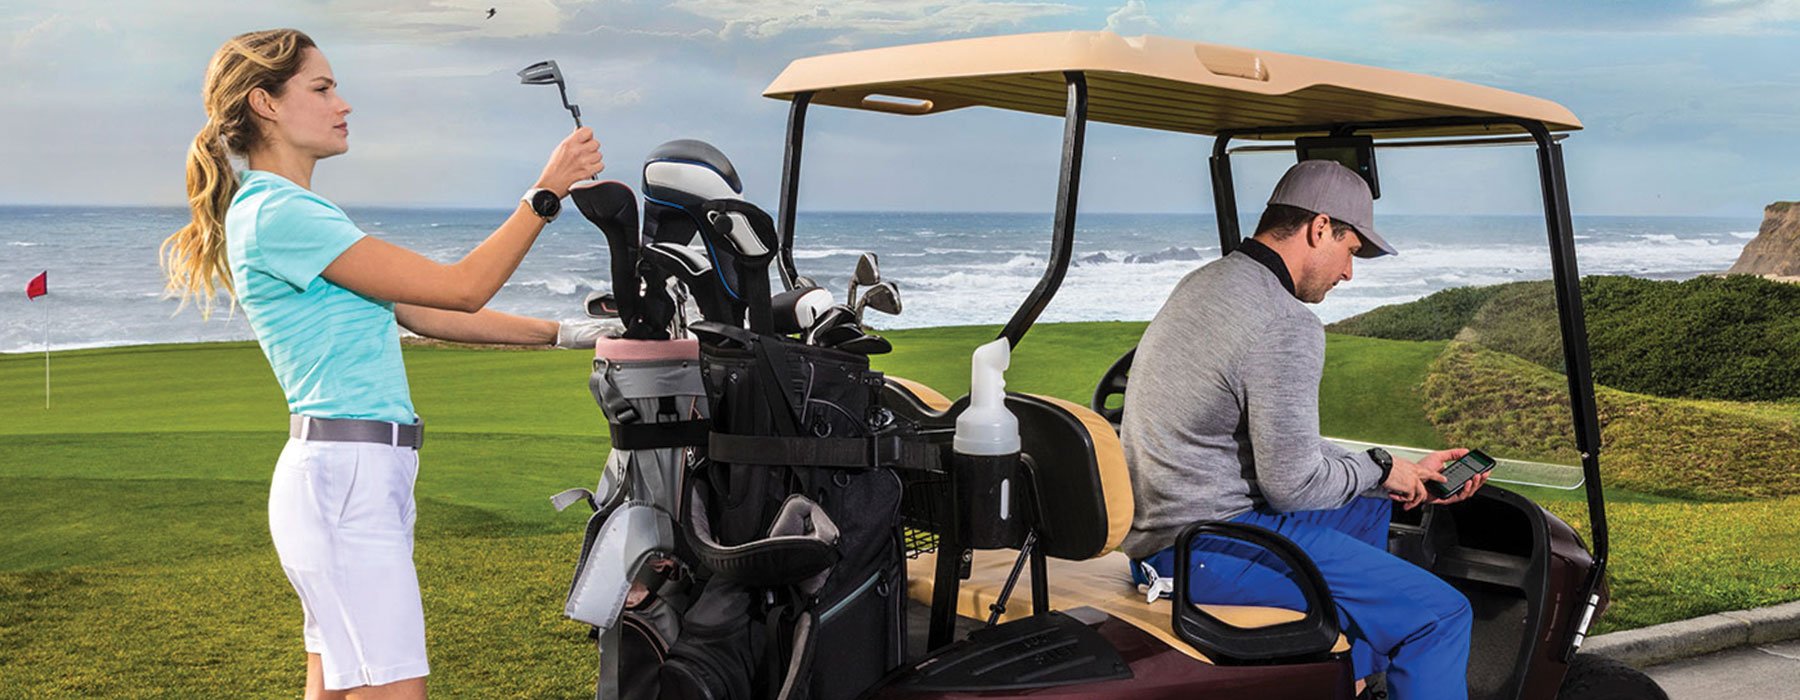 Garmin Golf 應用程式 - A man and woman golfing